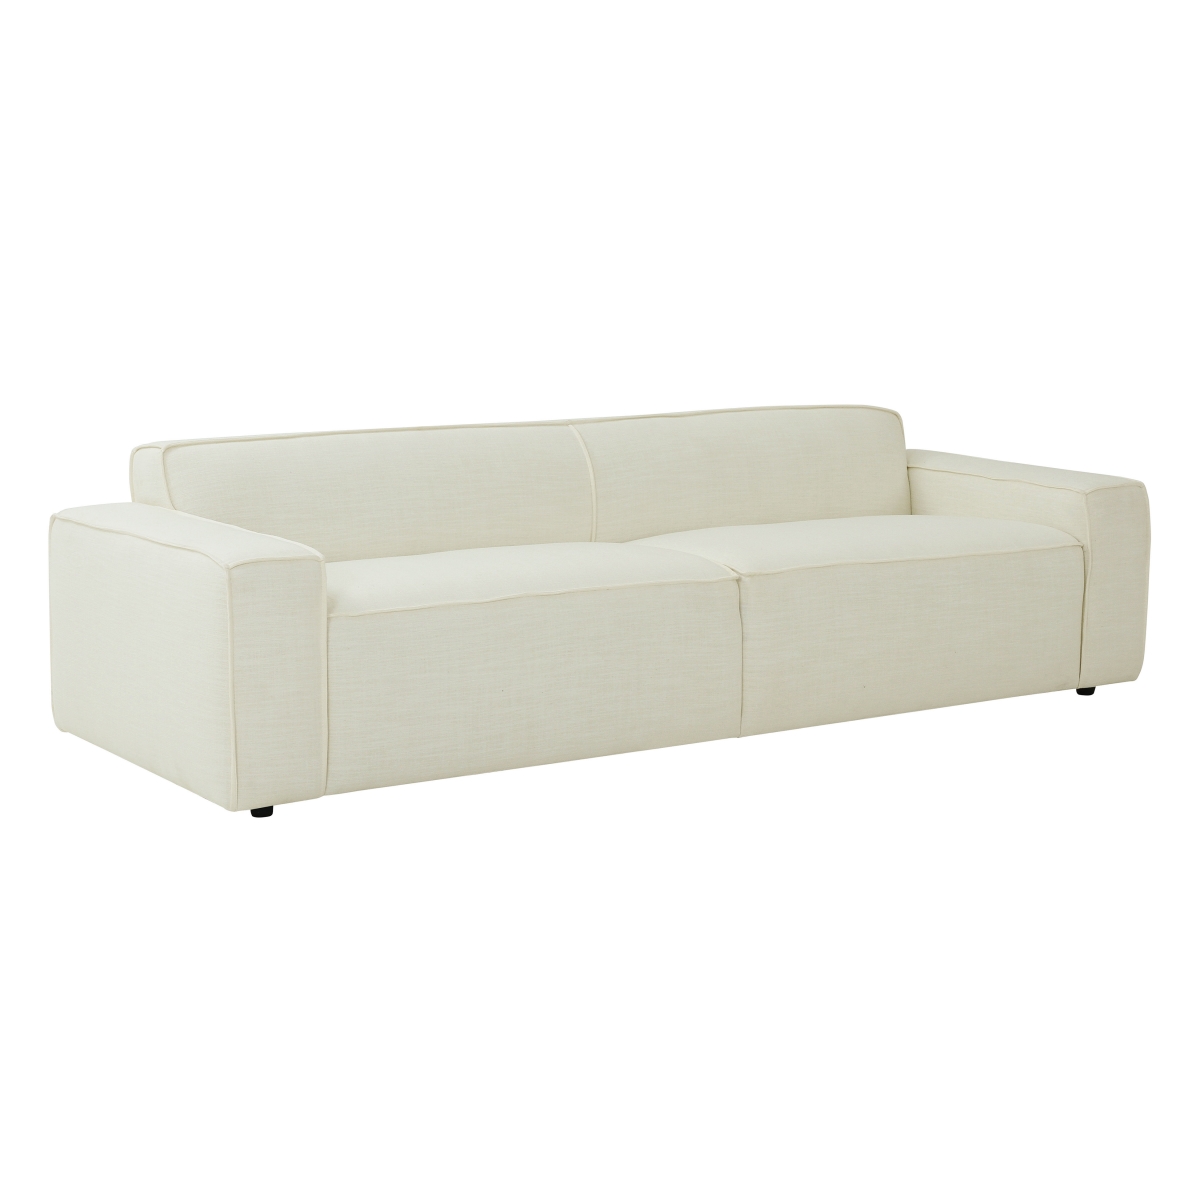 TOV-L68106 Olafur Linen Sofa, Cream -  Tov Furniture